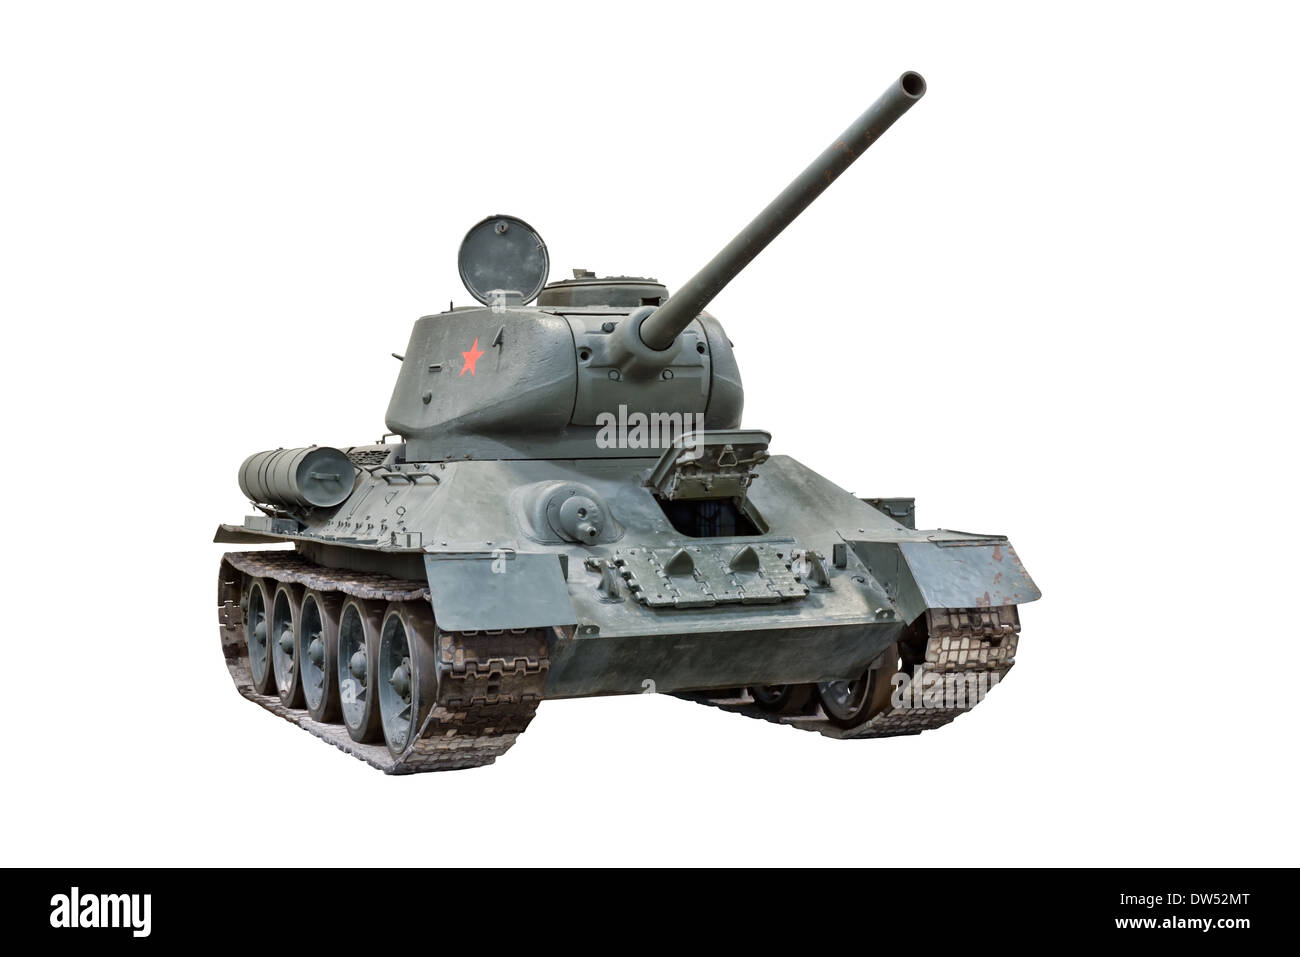 A schneiden Sie aus einem sowjetischen T-34 / 85 mittlerer Panzer durch russische Kräfte während WW2 & andere Warschauer Pakt Armeen später verwendet Stockfoto